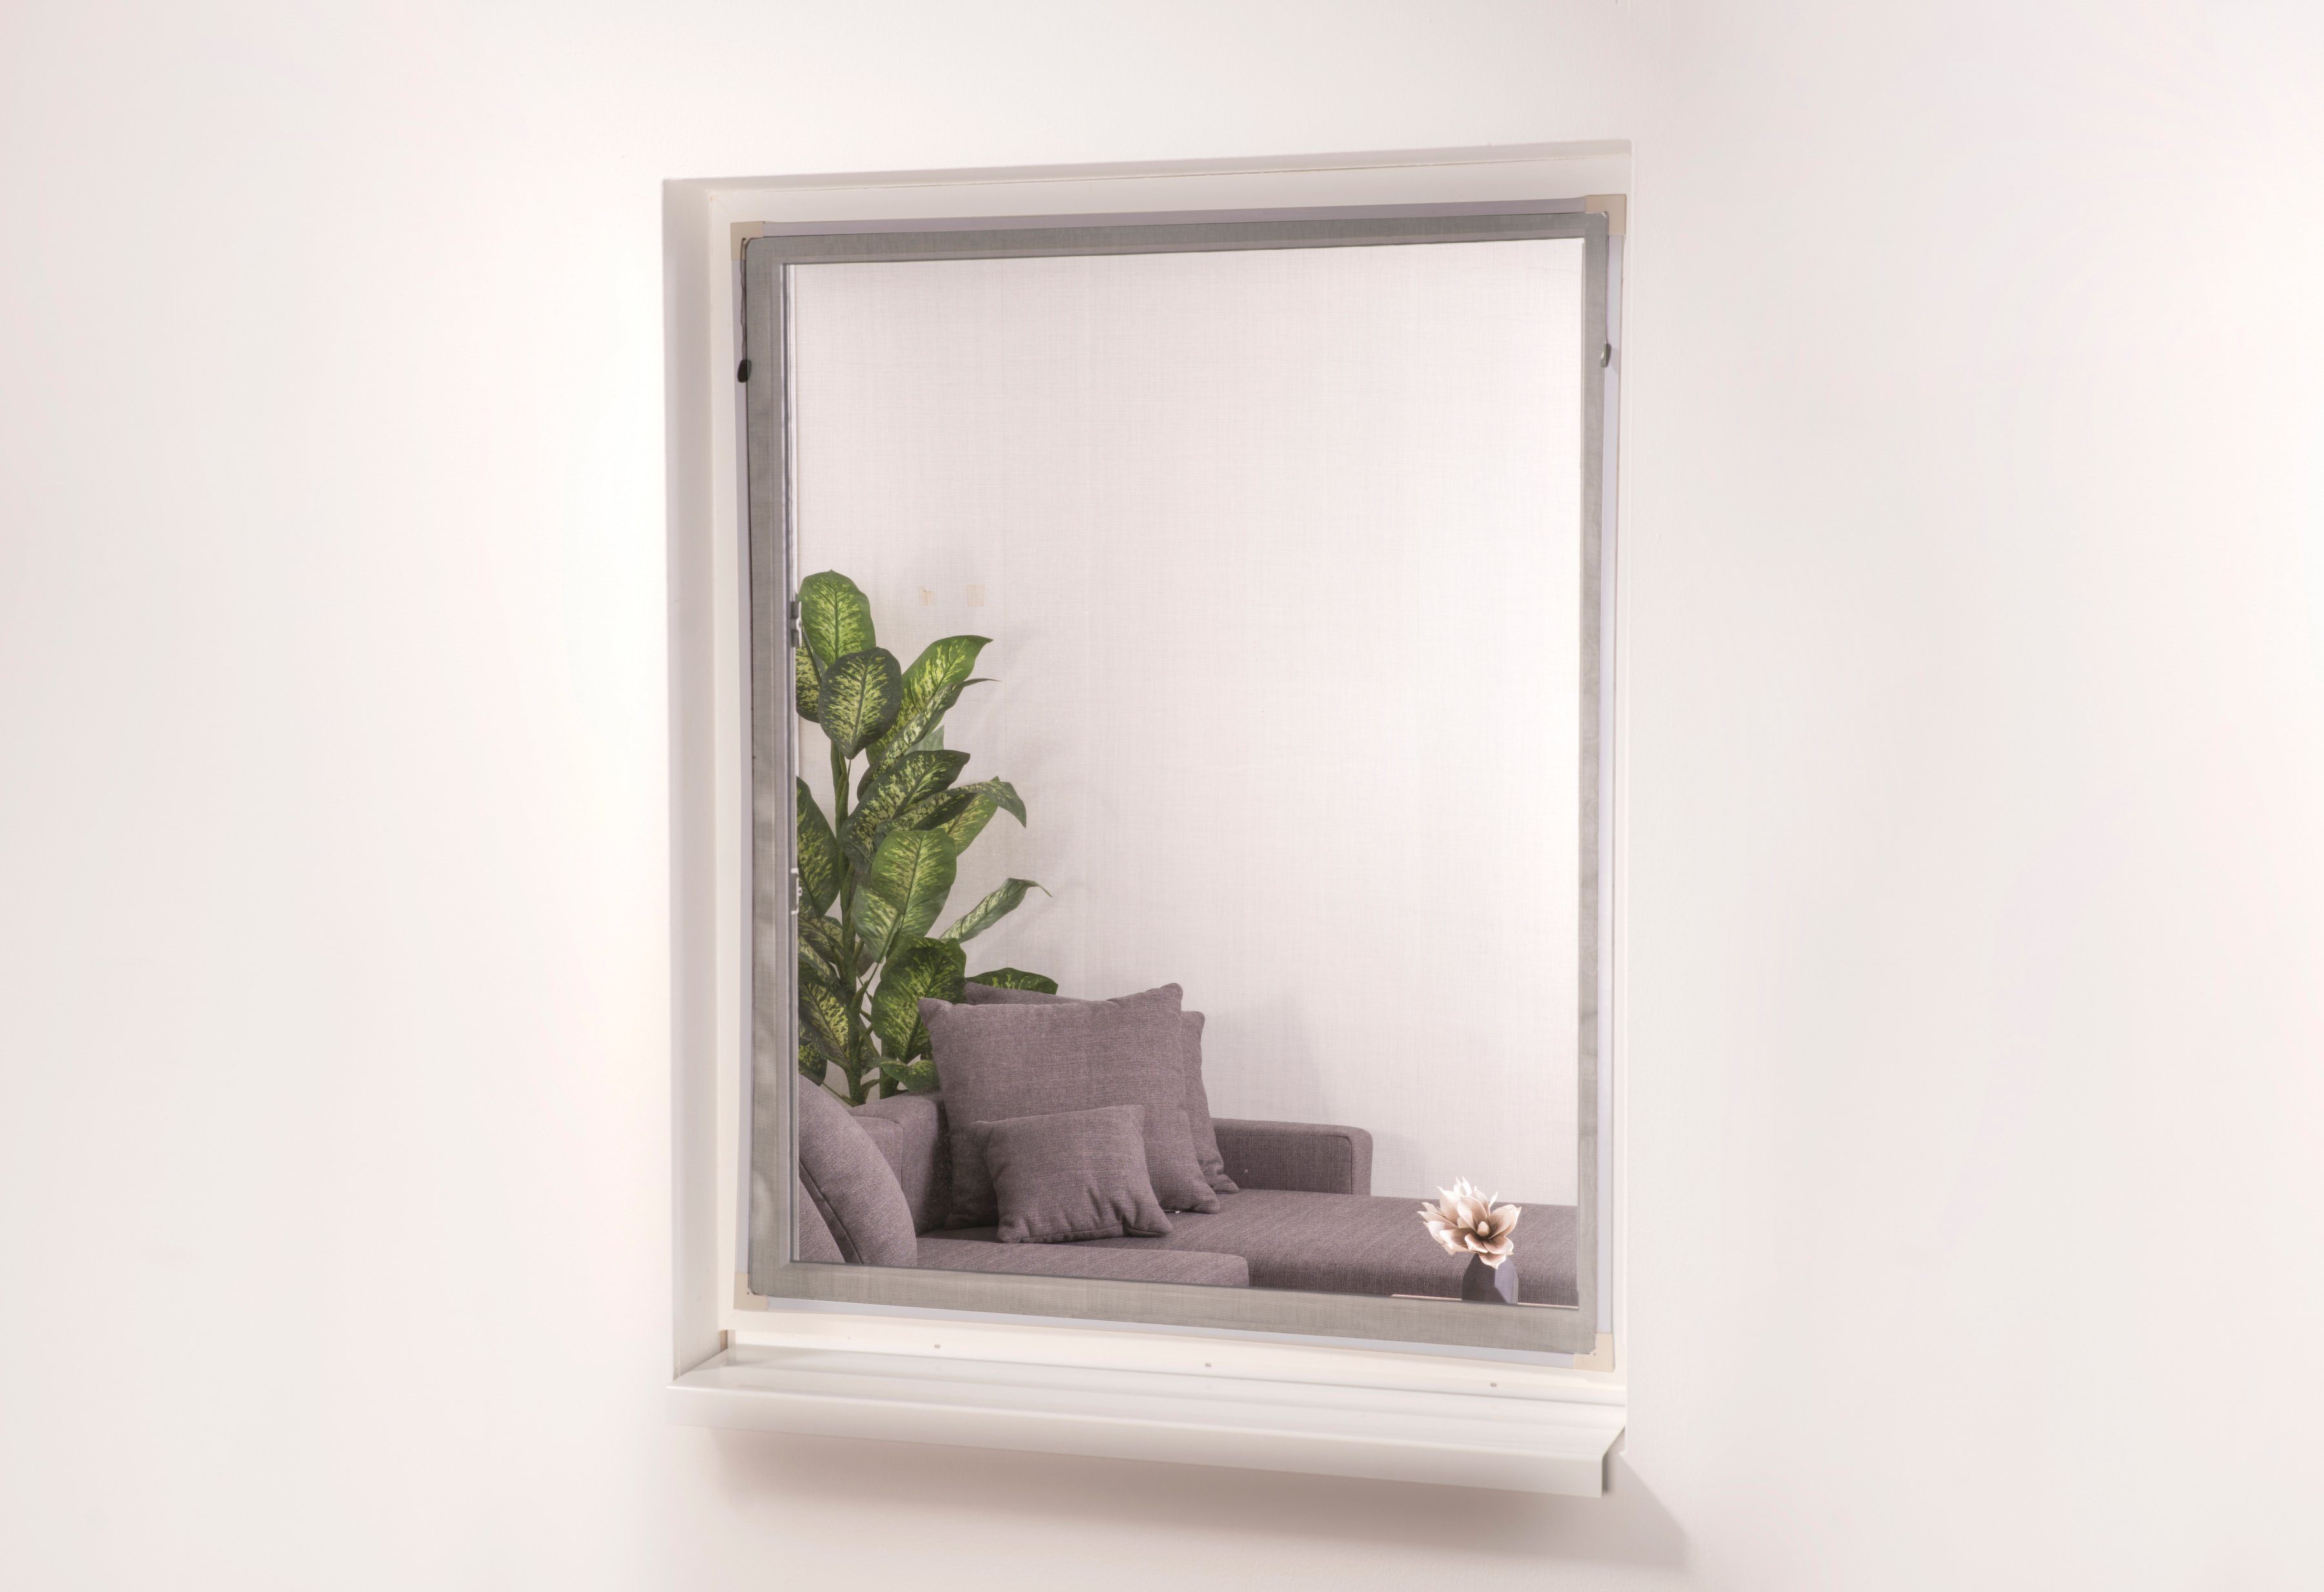 hecht international Insektenschutz-Fensterrahmen EASY, weiß/anthrazit, BxH: 130x150 cm